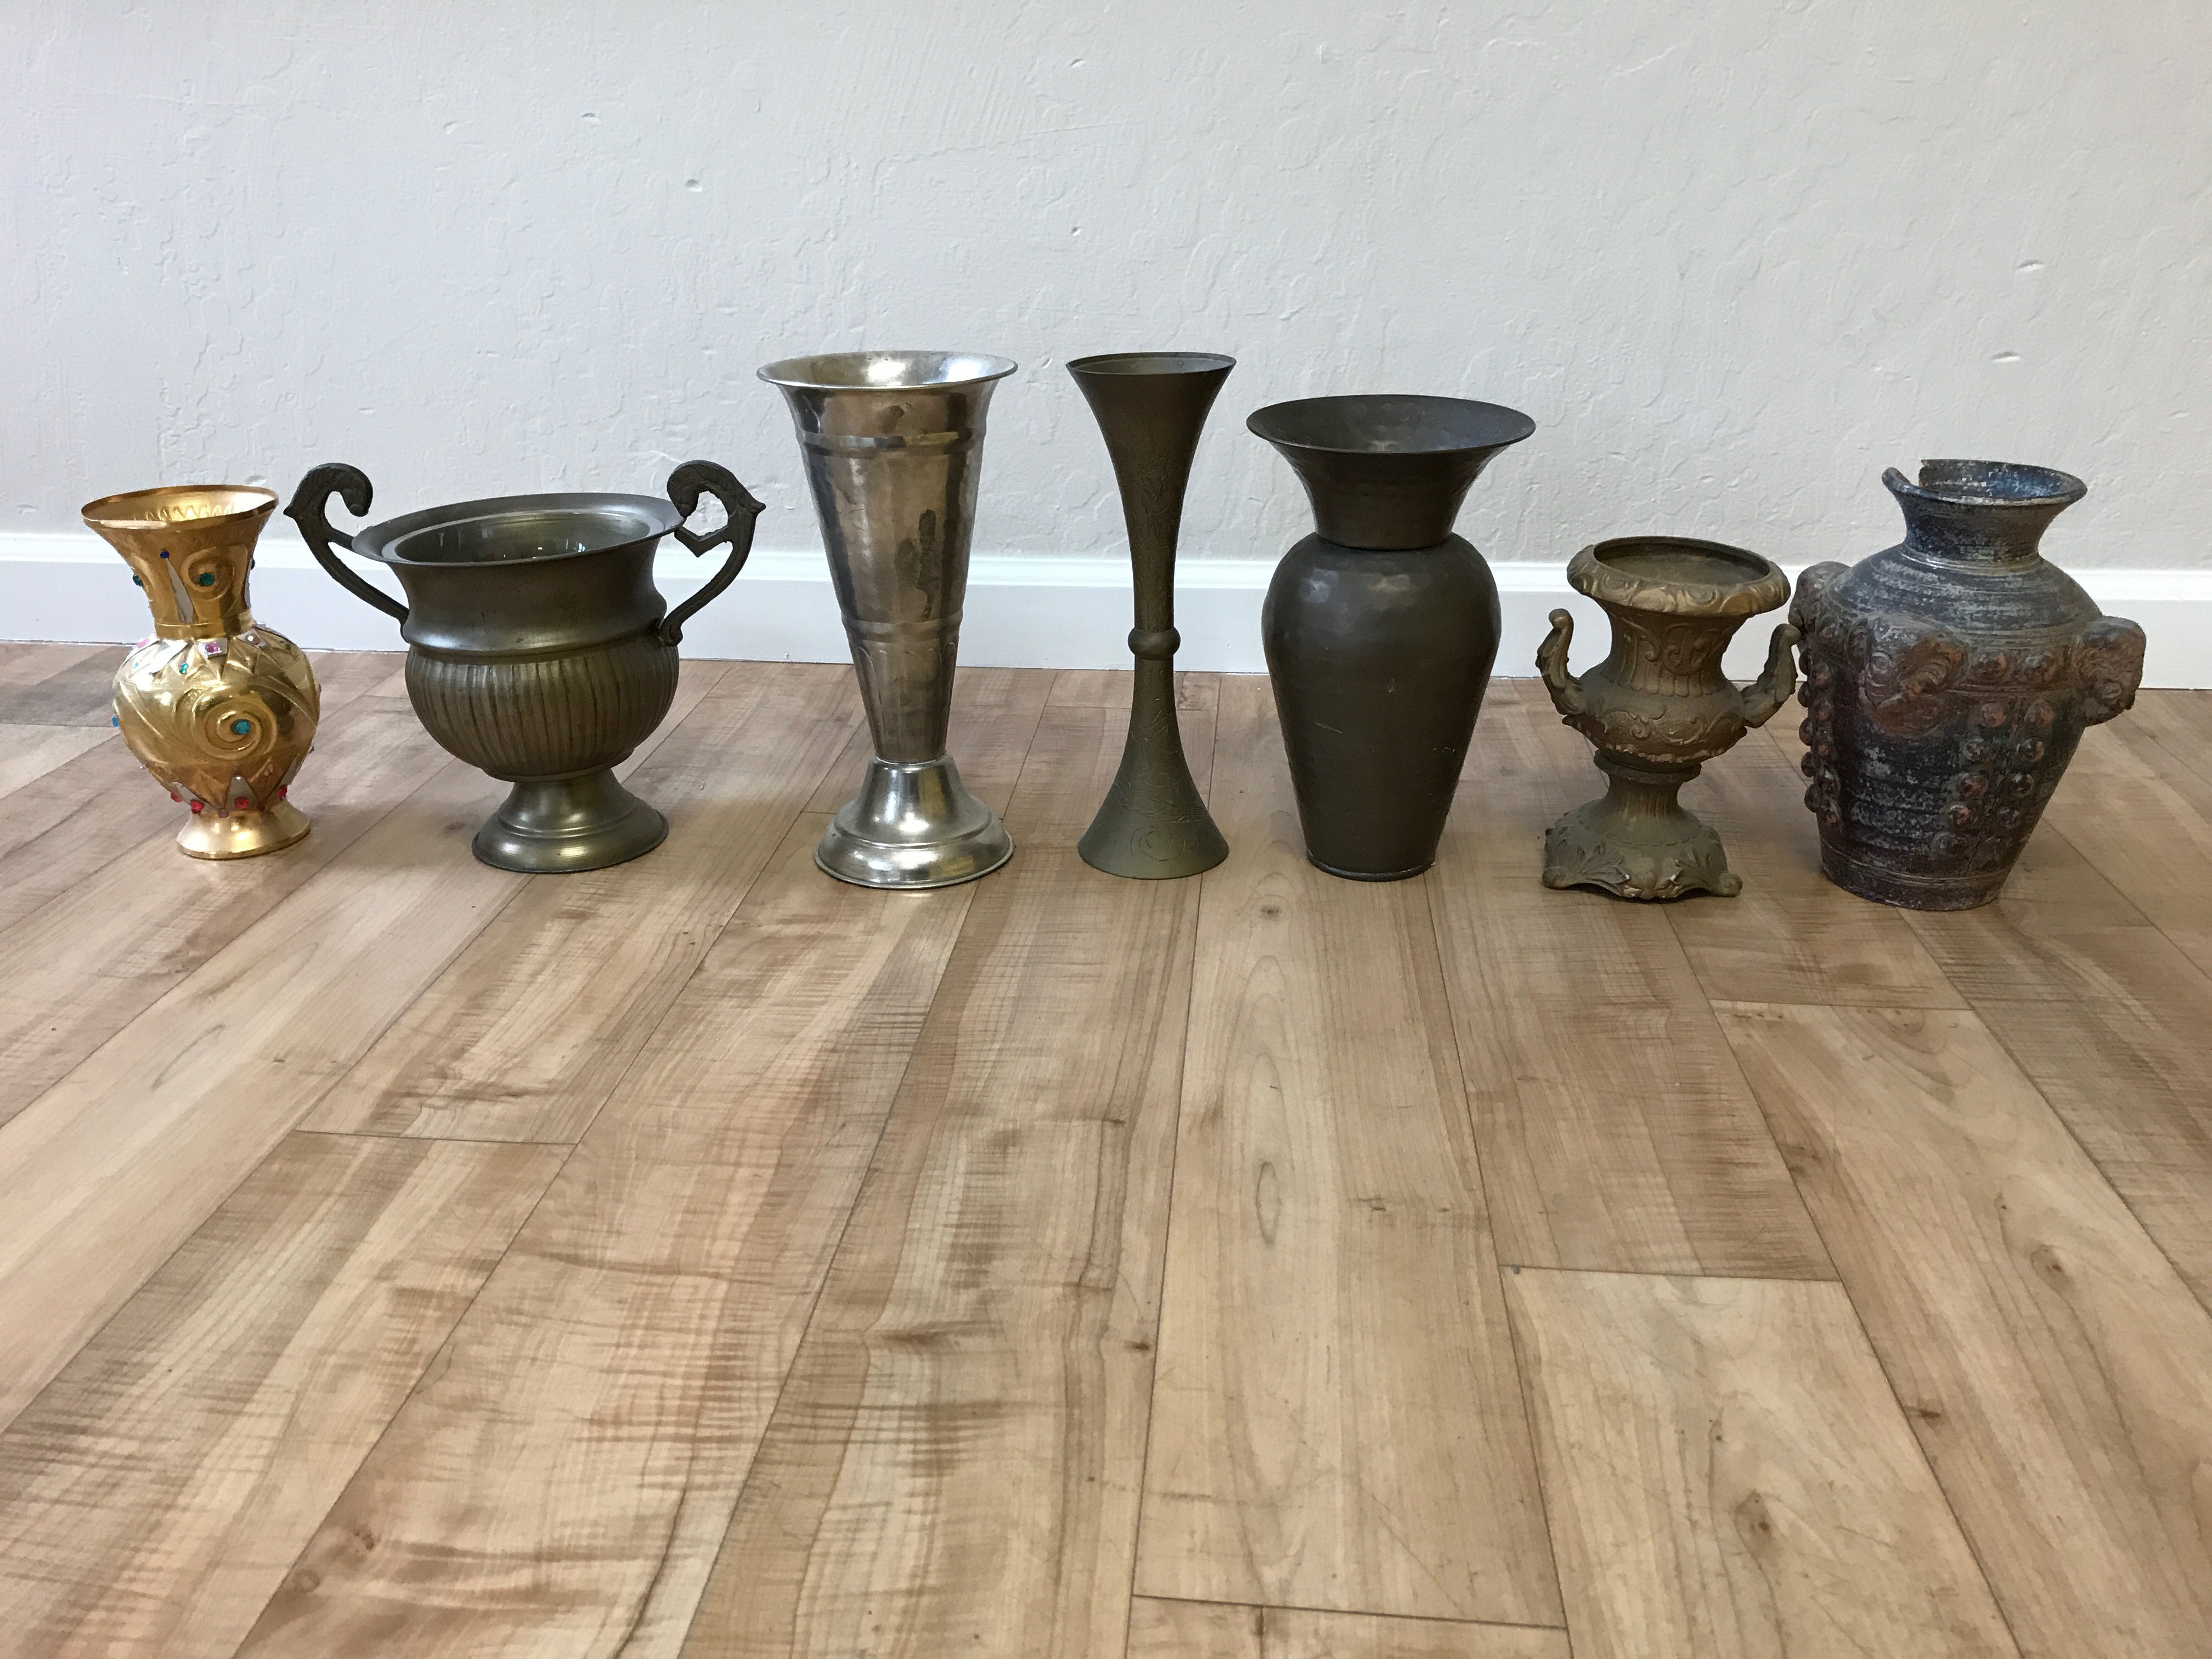 urns